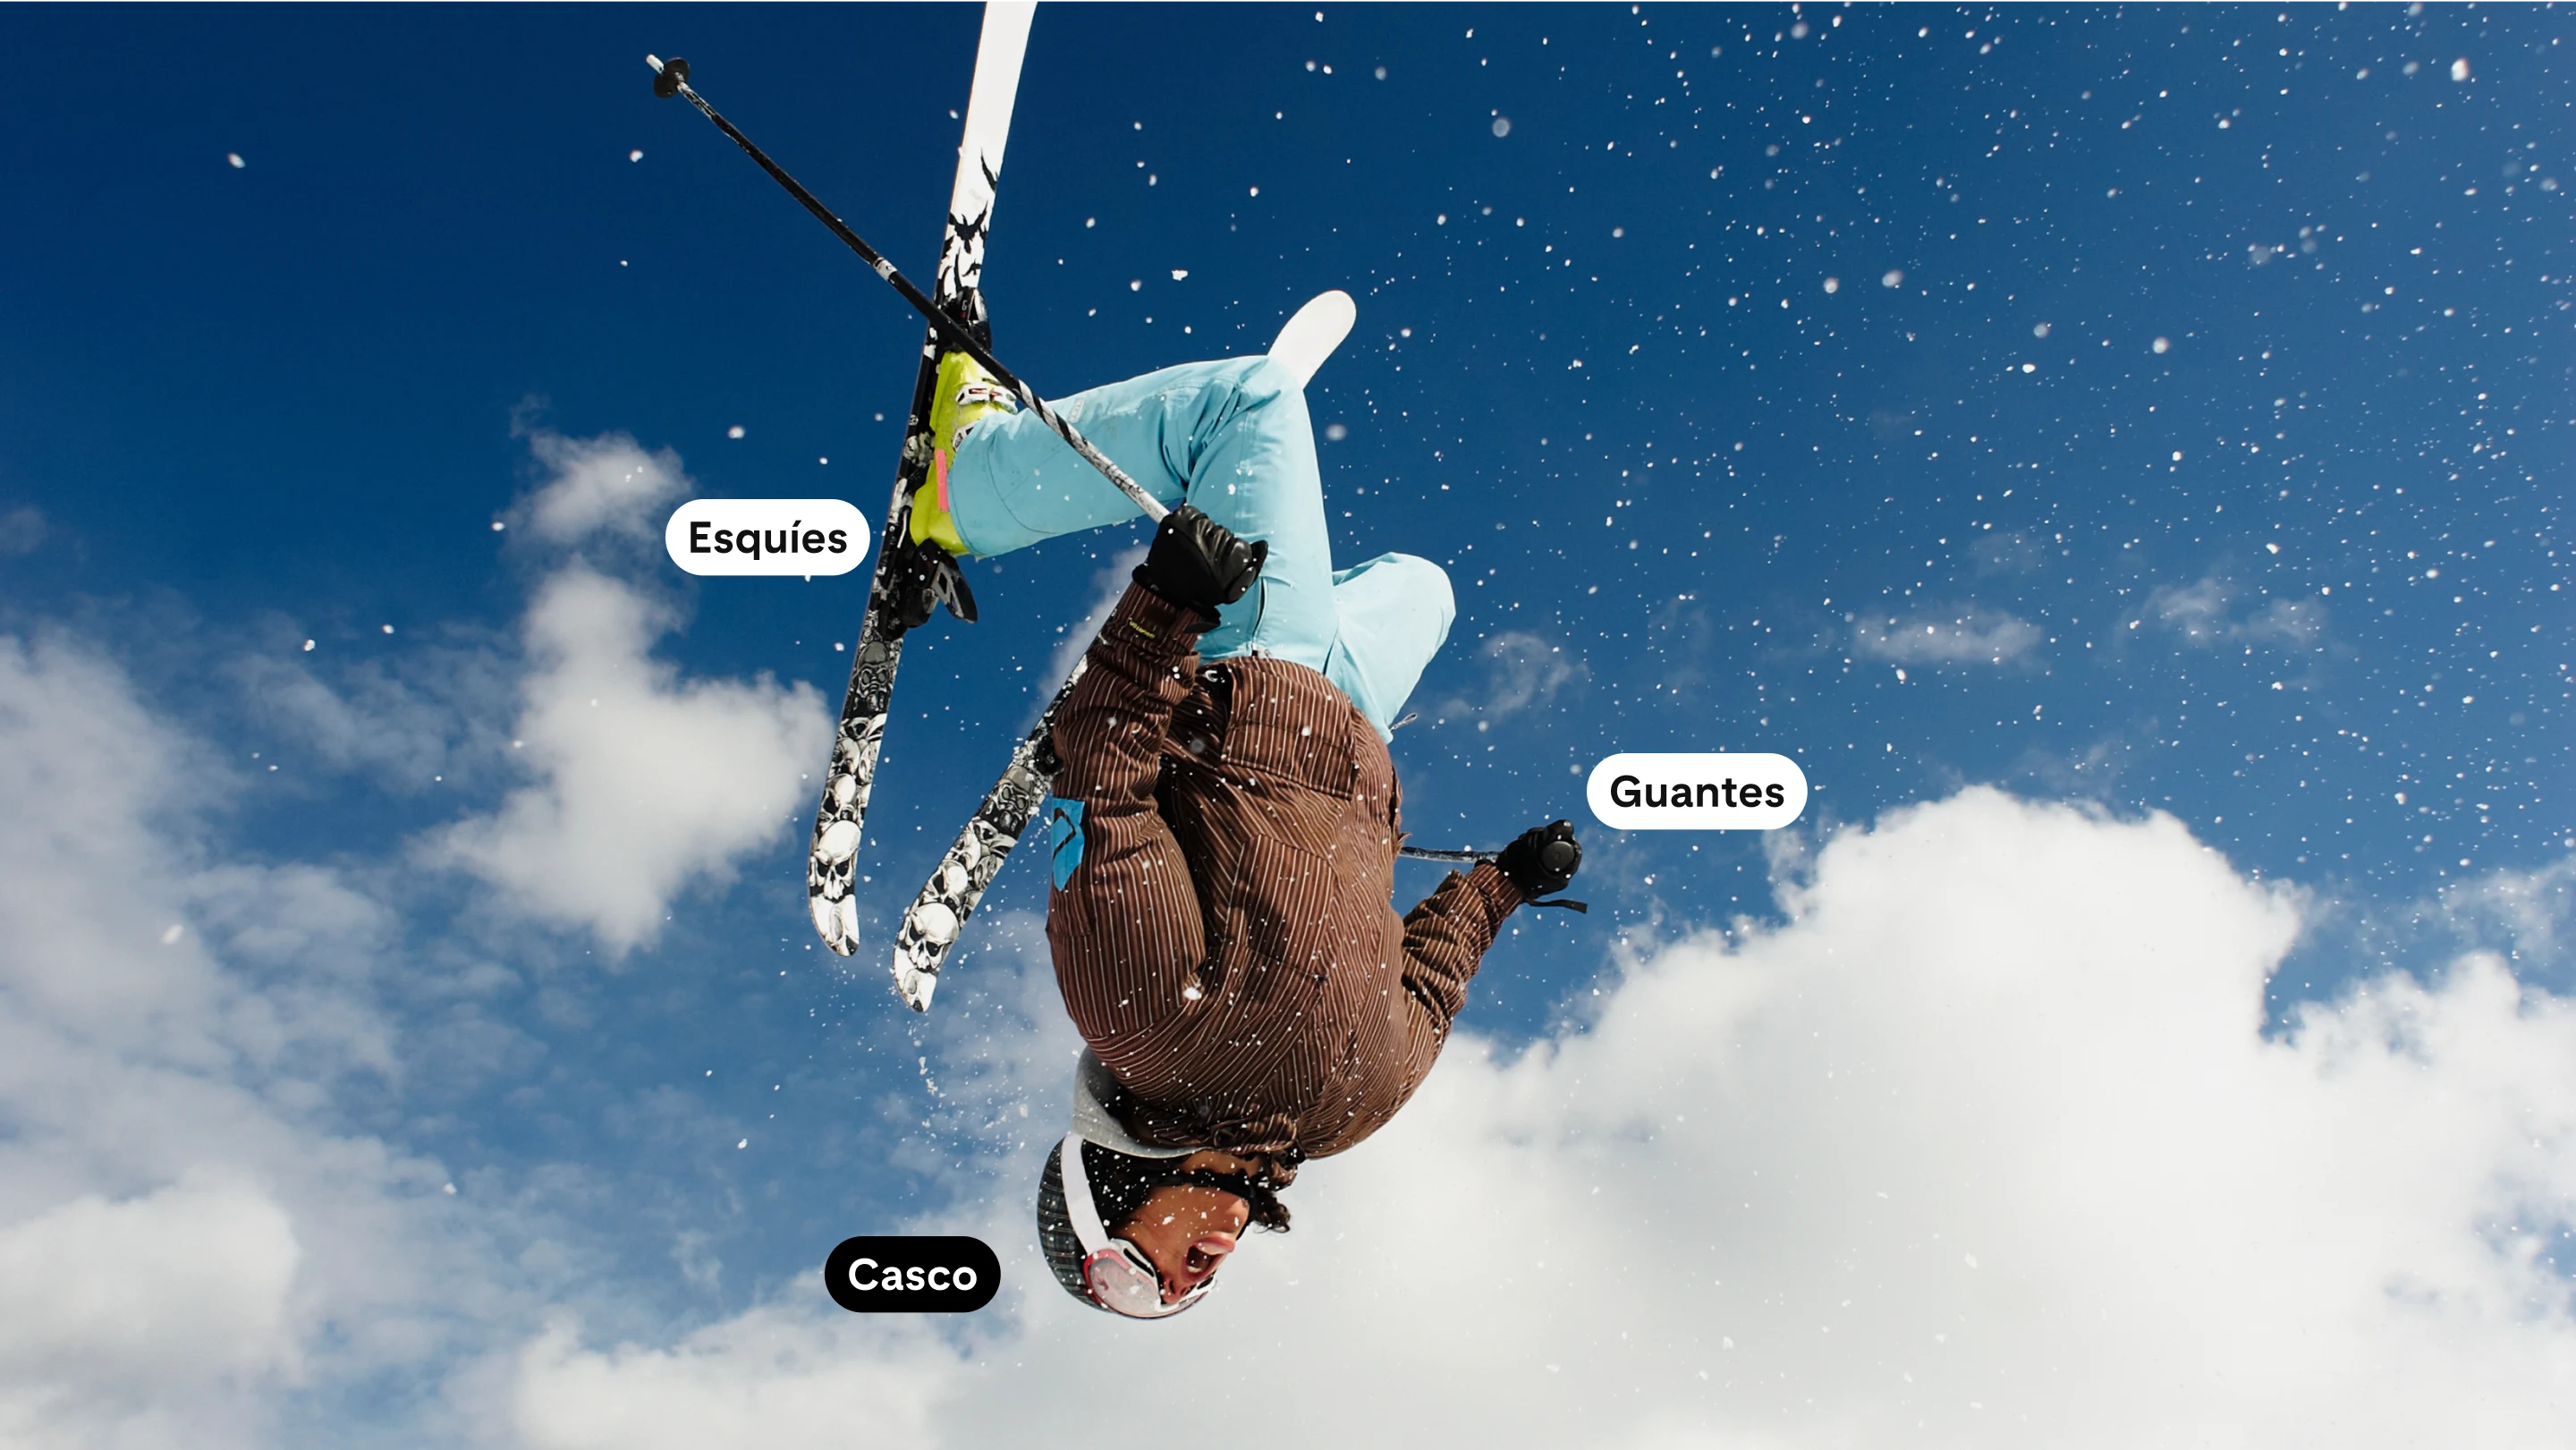 Imagen de ancho completo en la que se ve una mujer de cabeza en el aire con equipo de nieve completo y esquís.